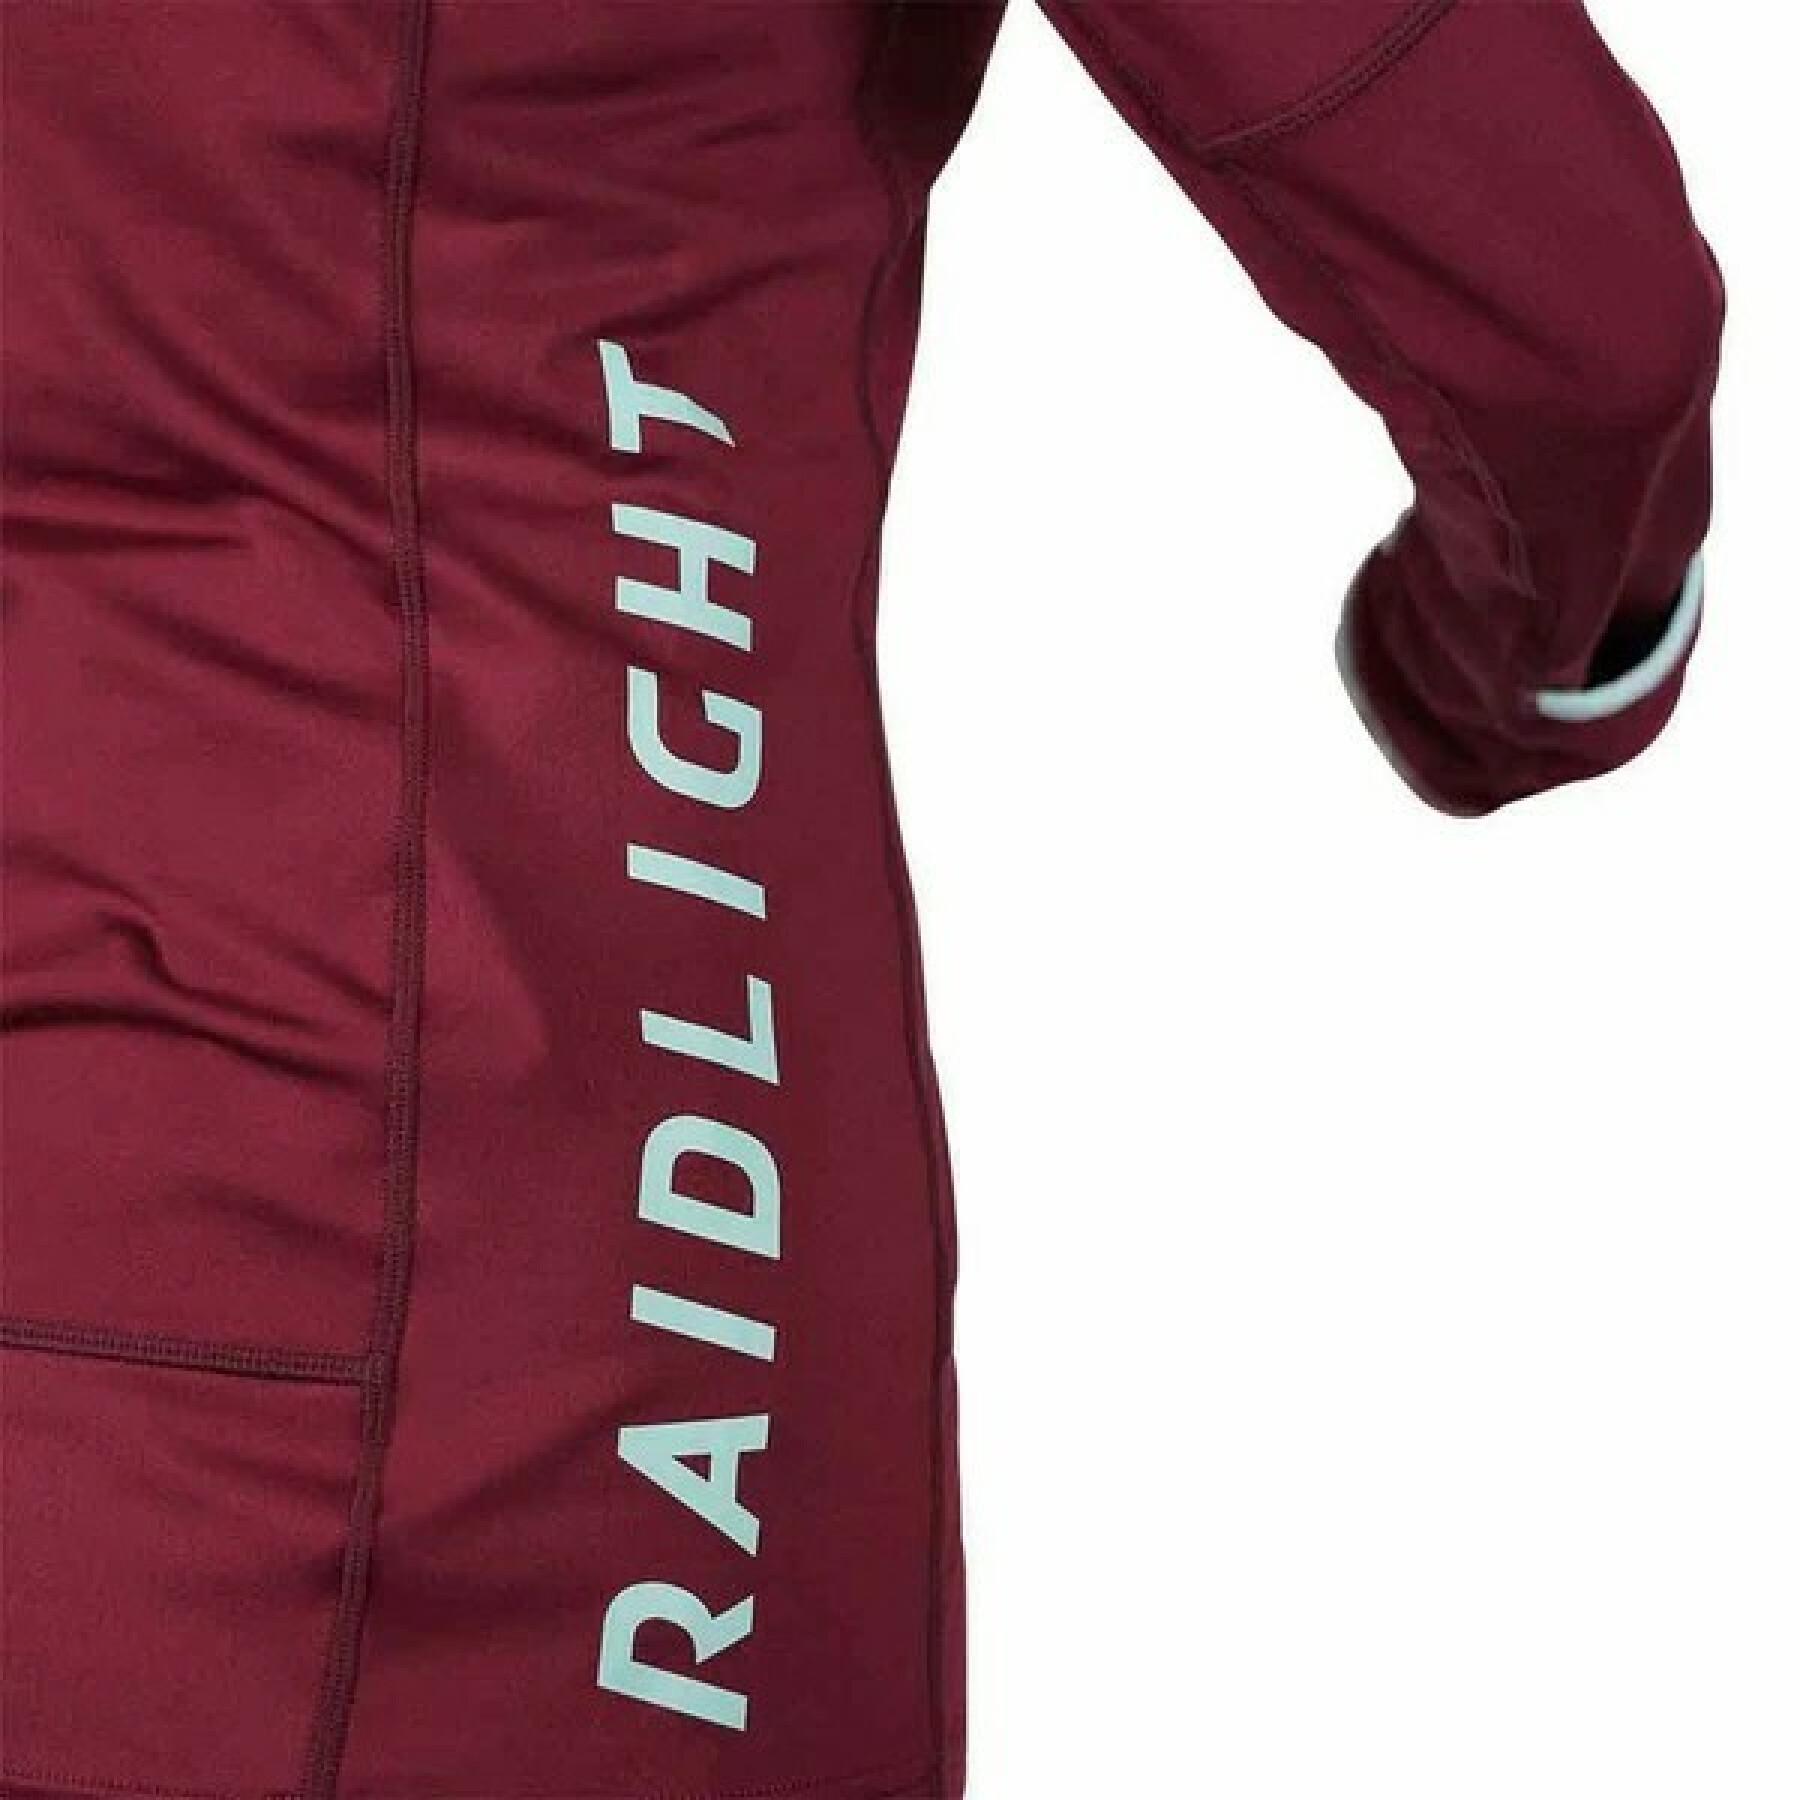 Women's long sleeve jersey RaidLight Wintertrail